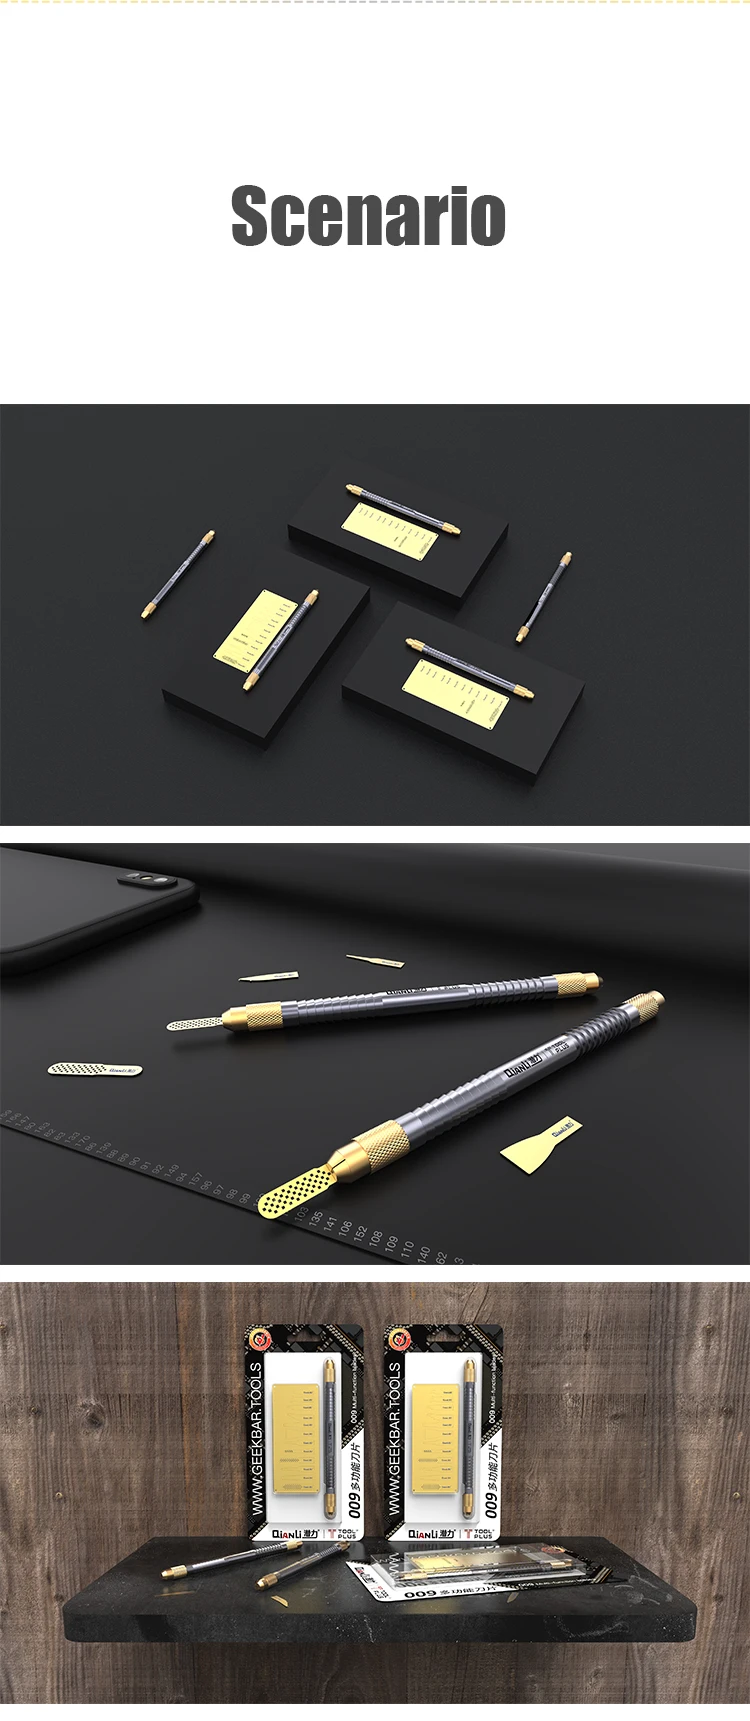 QianLi 009 Original multifunctional knife for iPhone repair CPU IC Chip Glue Remove Thin blade Motherboard Repair Tool set